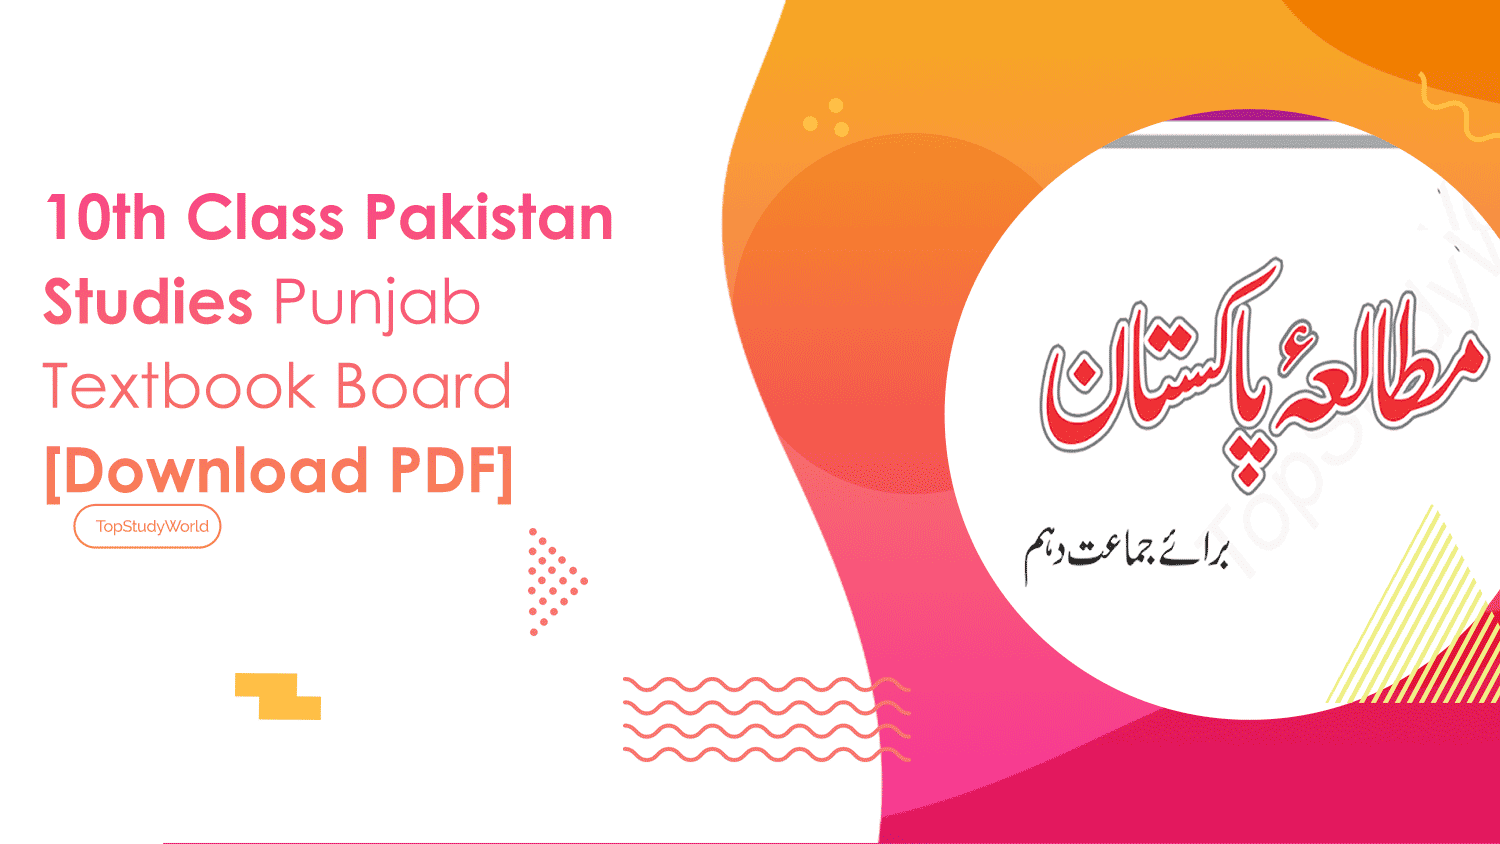 10th Class Pakistan Studies Punjab Textbook Board [Download PDF]